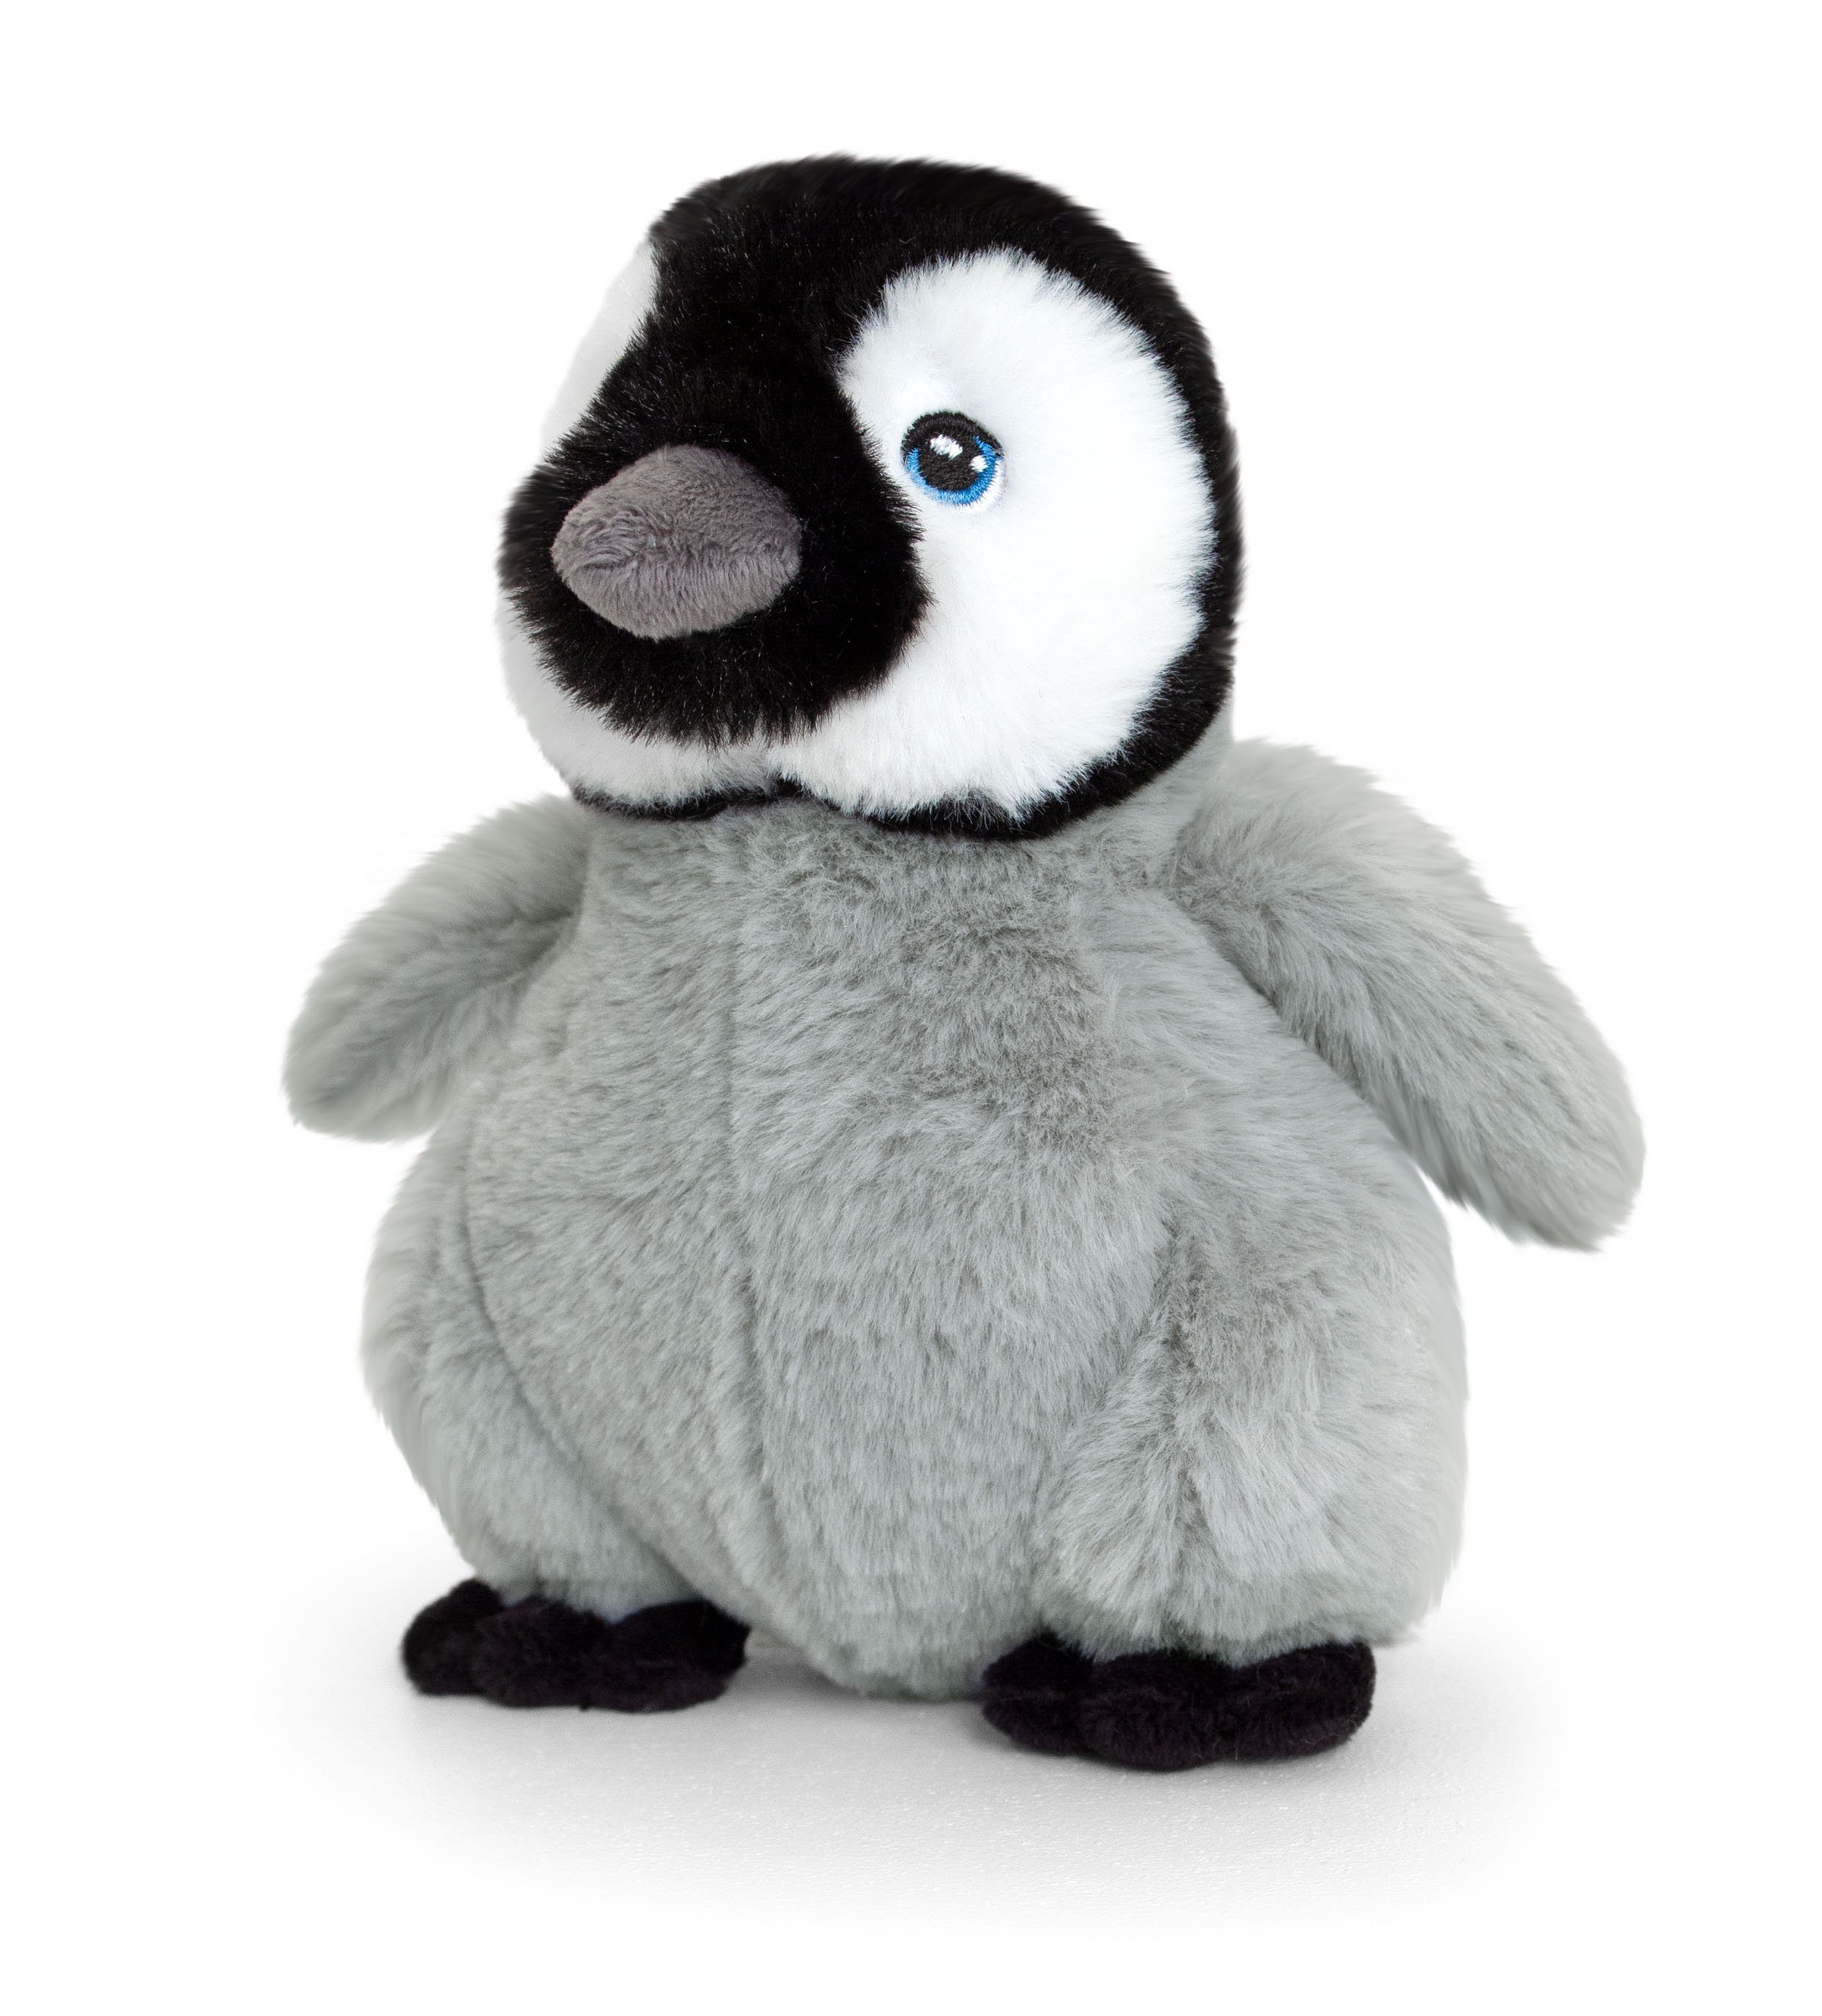 Keel Toys Kuscheltier Keeleco Pinguin Humboldt in verschiedenen Größen, Watte gefüllter Plüsch aus 100% recycelten Plastikflaschen | Kuscheltiere